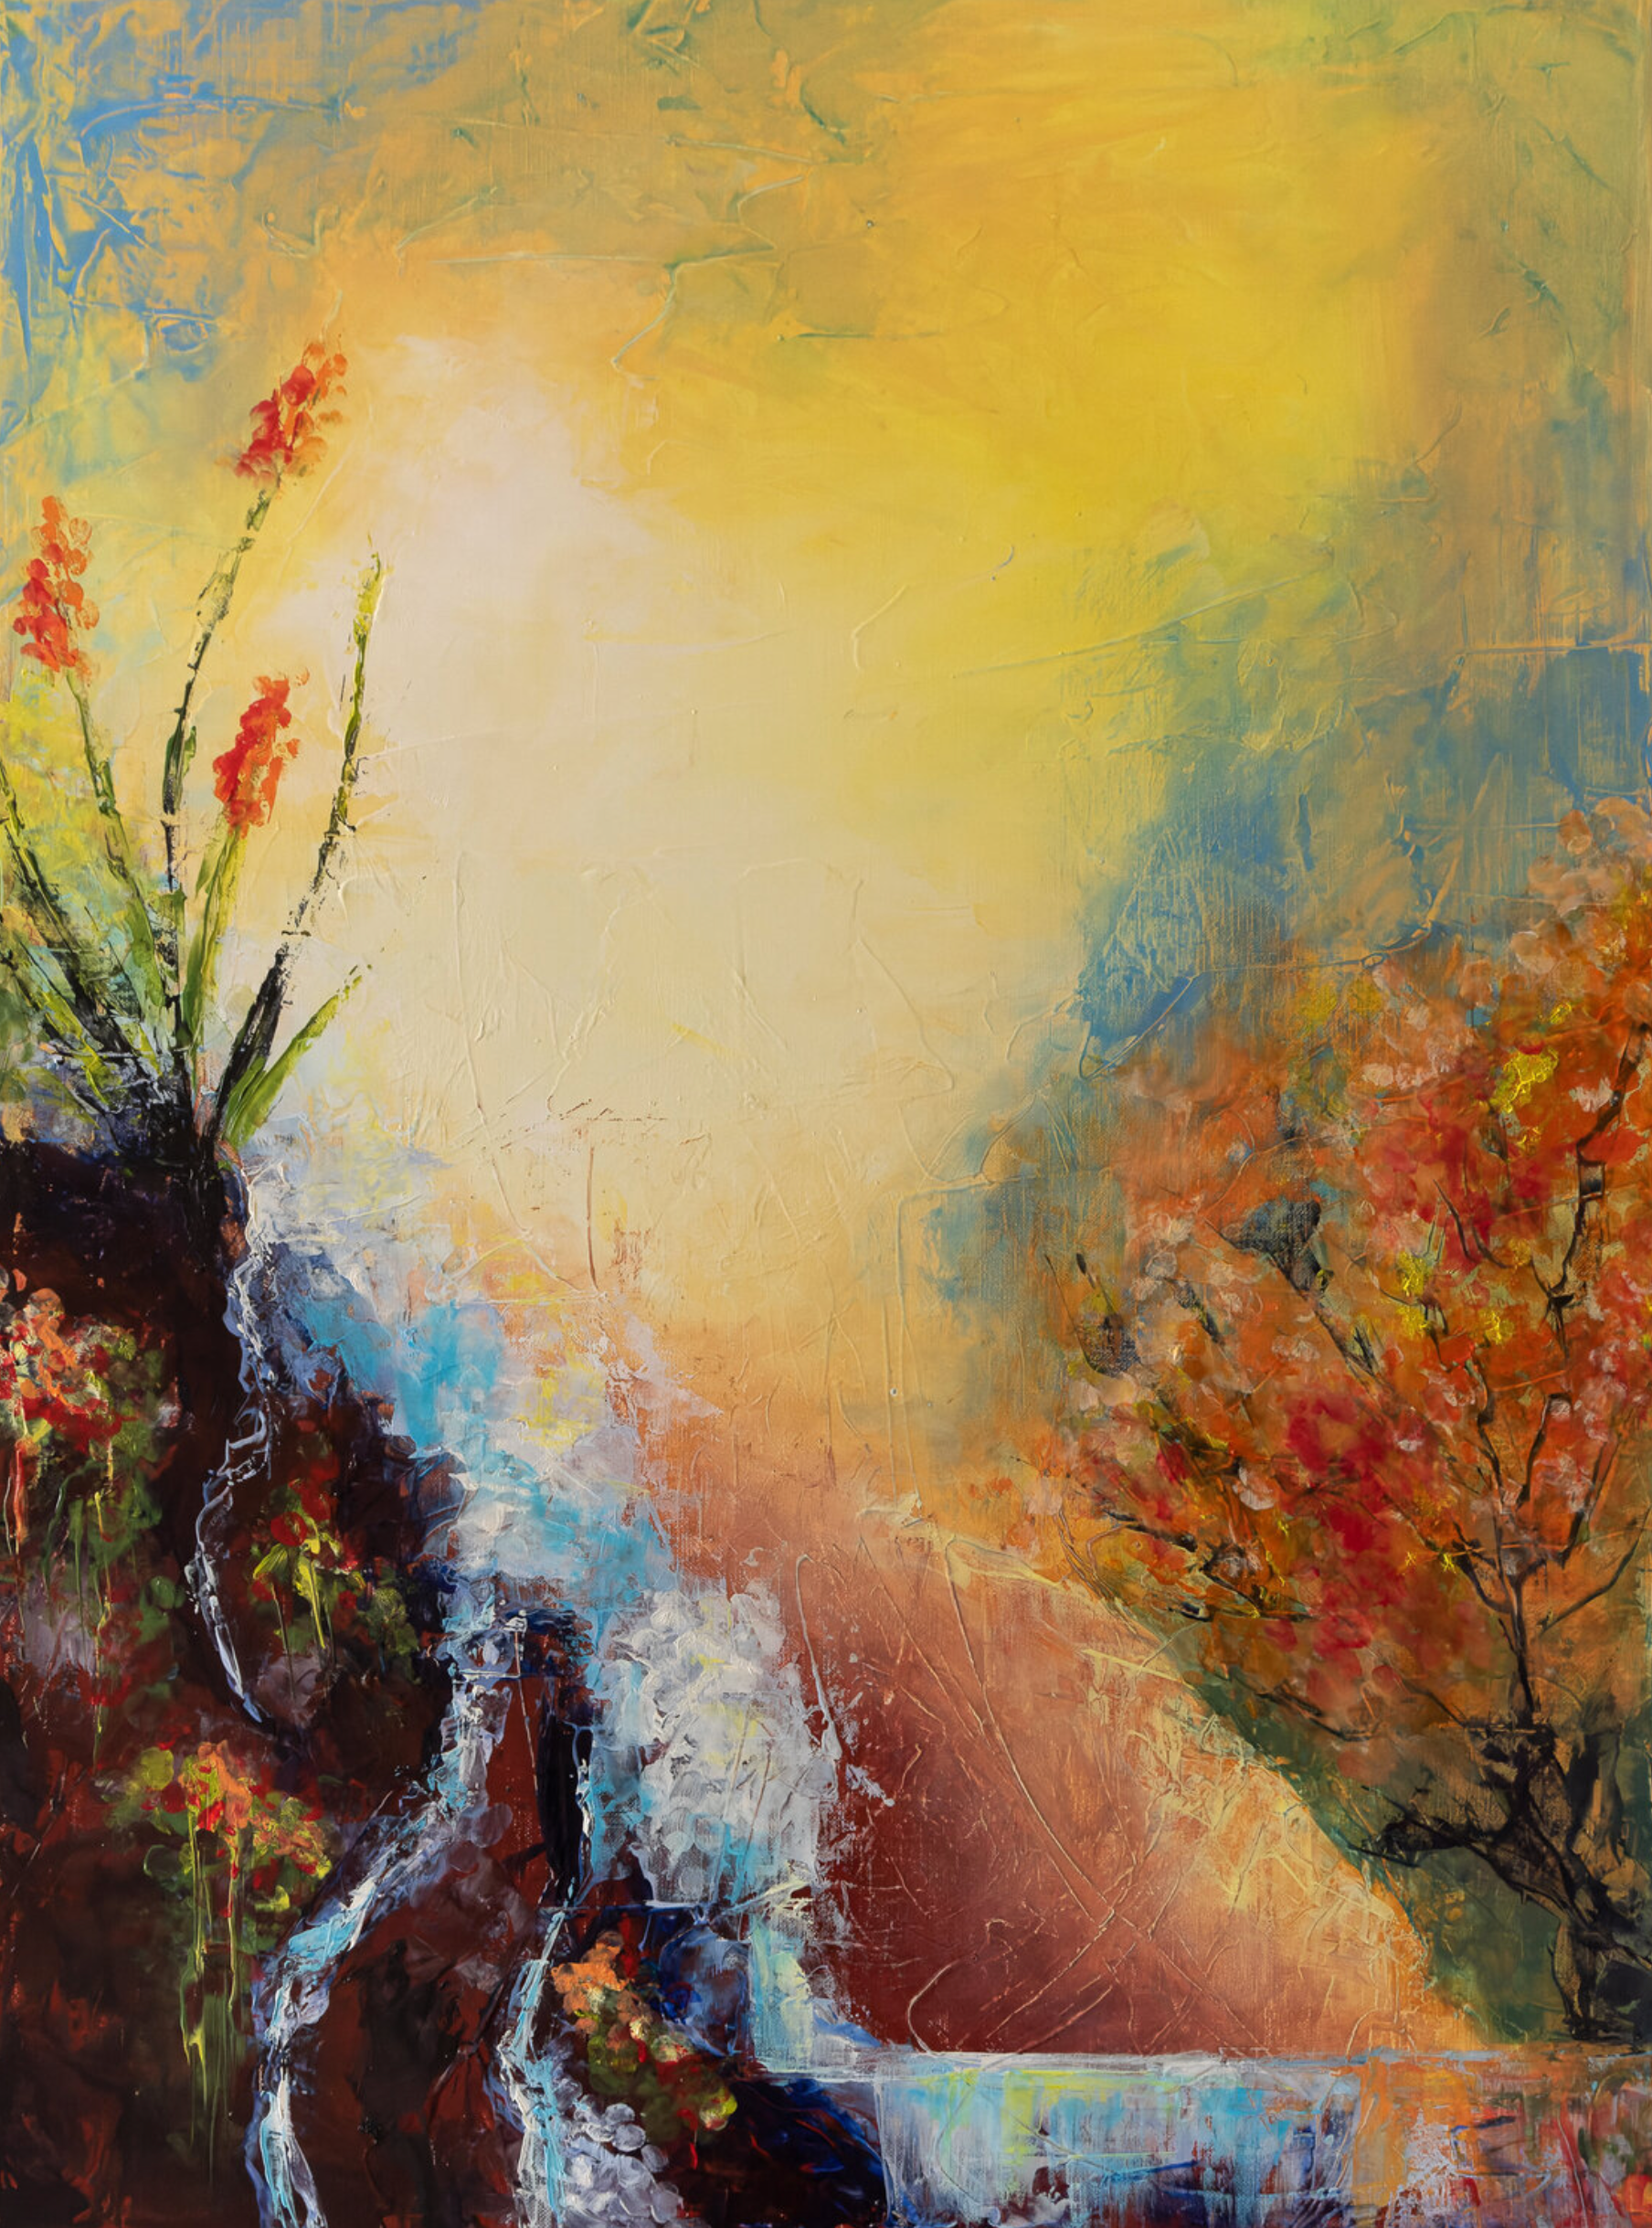 Il dipinto astratto "Lascive" di Françoise Dugourd-Caput raffigura il paesaggio immaginario di una cascata che scende lungo un pendio, accarezzando le rocce rivestite di piante fiorite e abbinate a un albero in fiore, emanando un'atmosfera di sensualità.